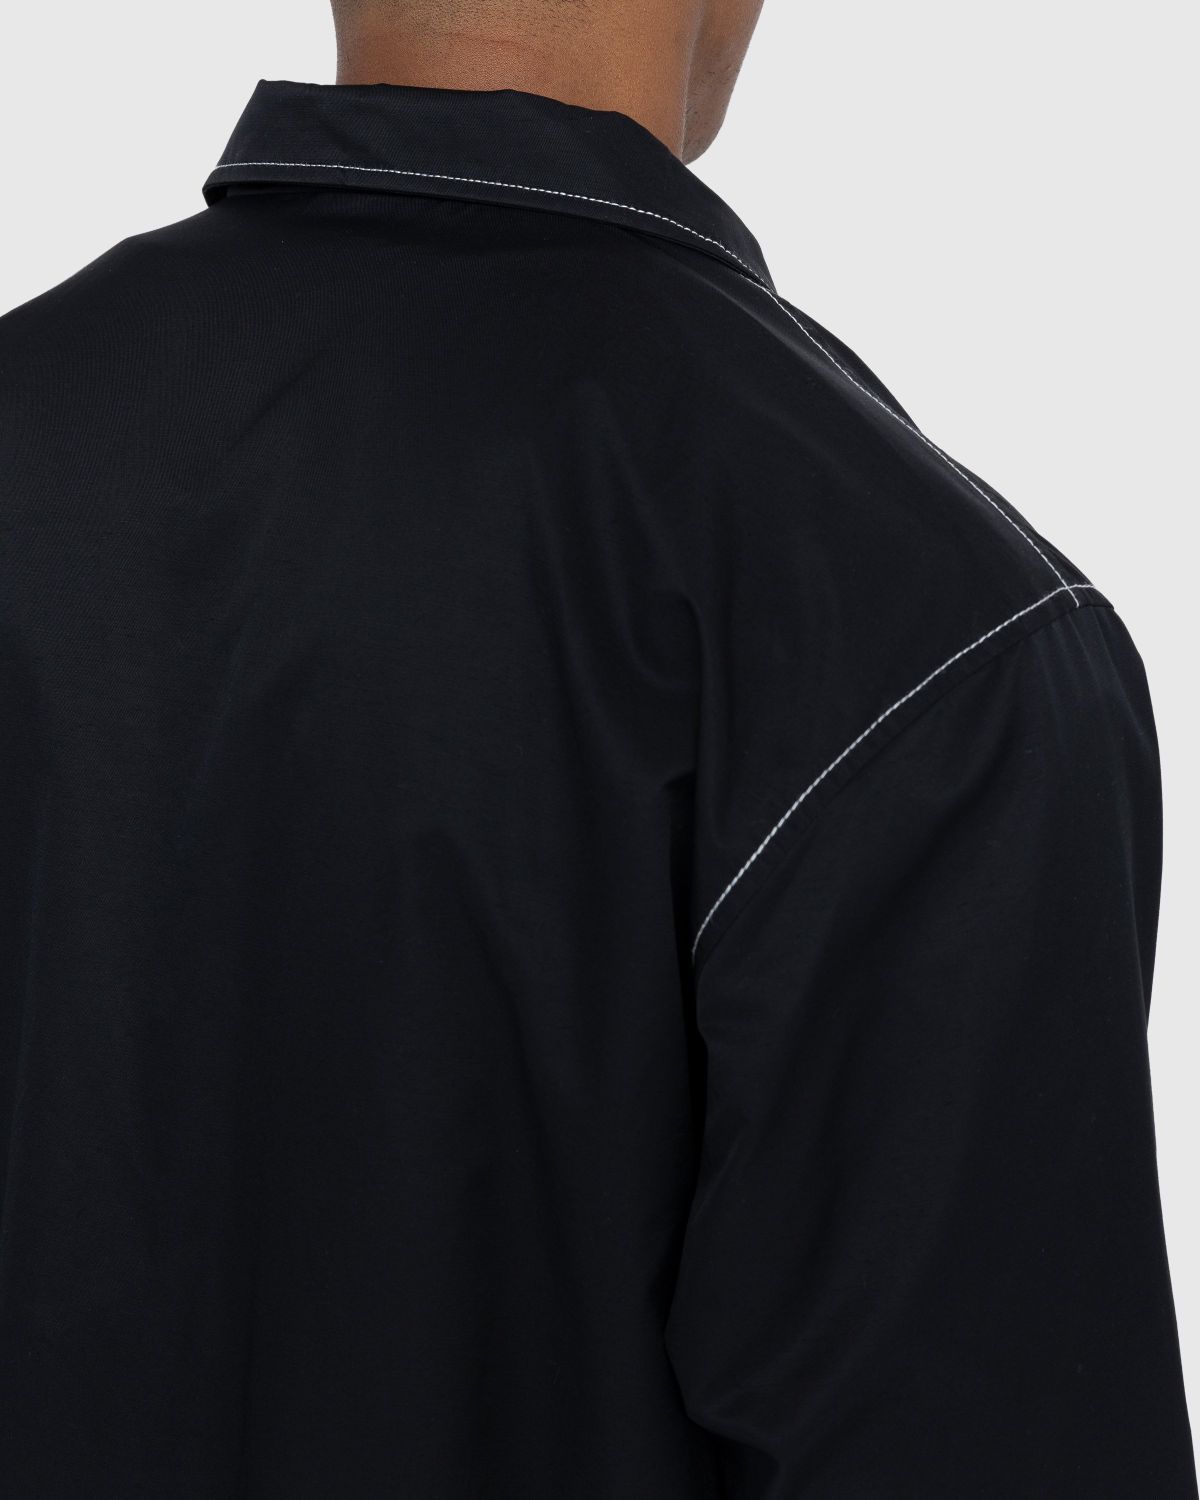 Highsnobiety – Brushed Nylon Jacket Black - Jackets - Black - Image 5